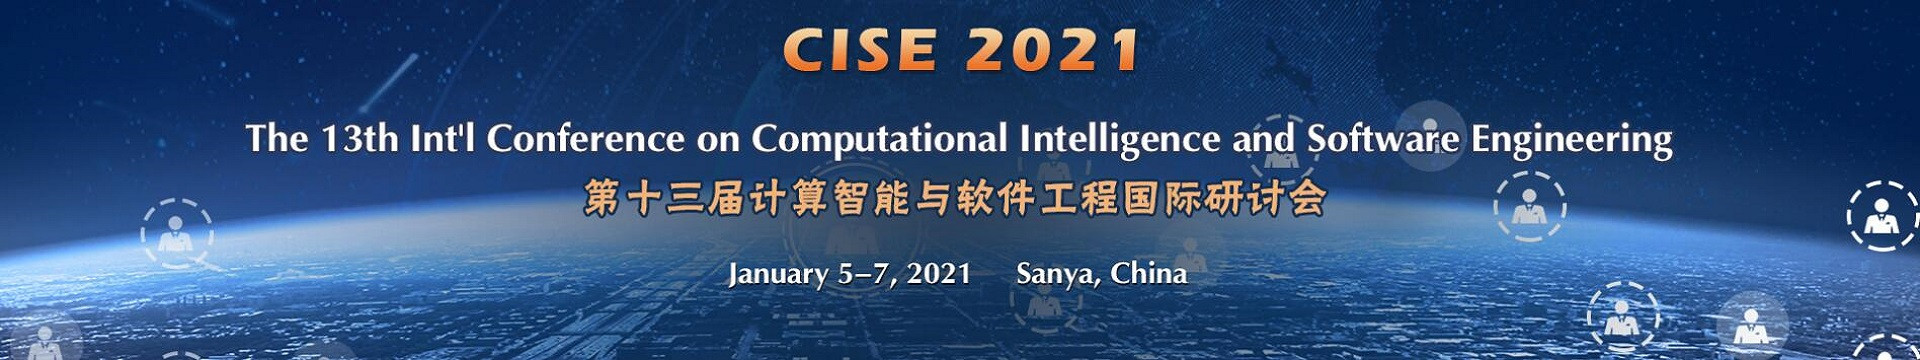 第十三届计算智能与软件工程国际研讨会(CISE 2021)